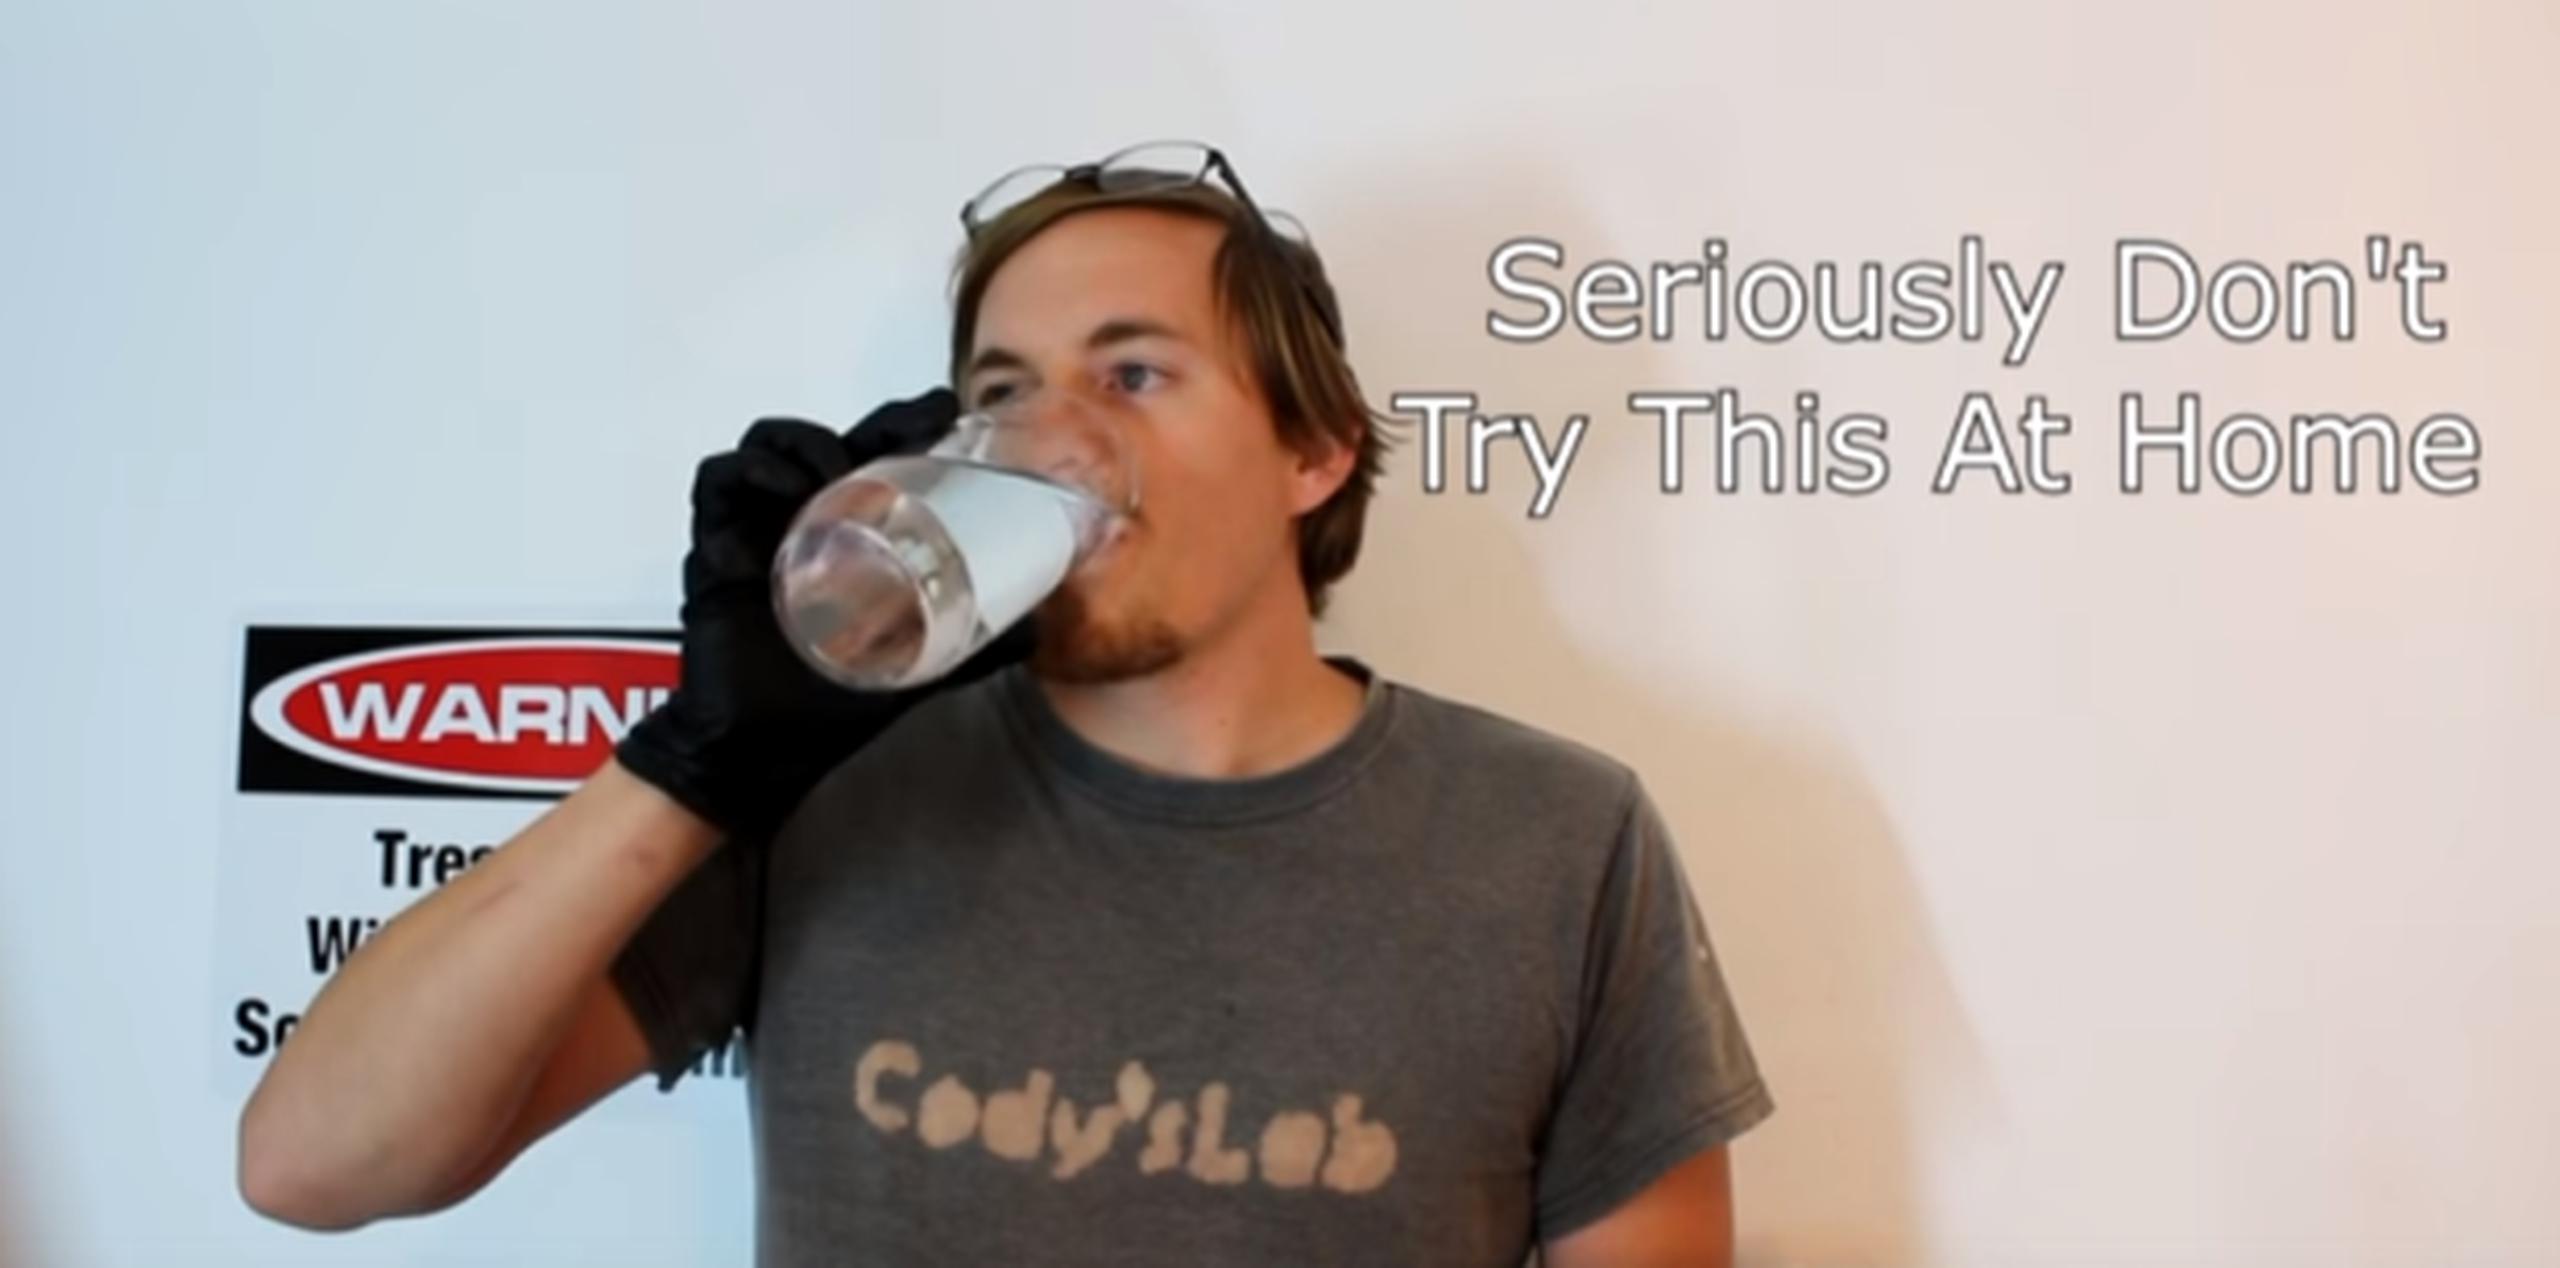 Cody aclara que lo que hace venenoso al cianuro es la cantidad administrada en la dosis y no la sustancia en sí misma. (YouTube / Cody'sLab)